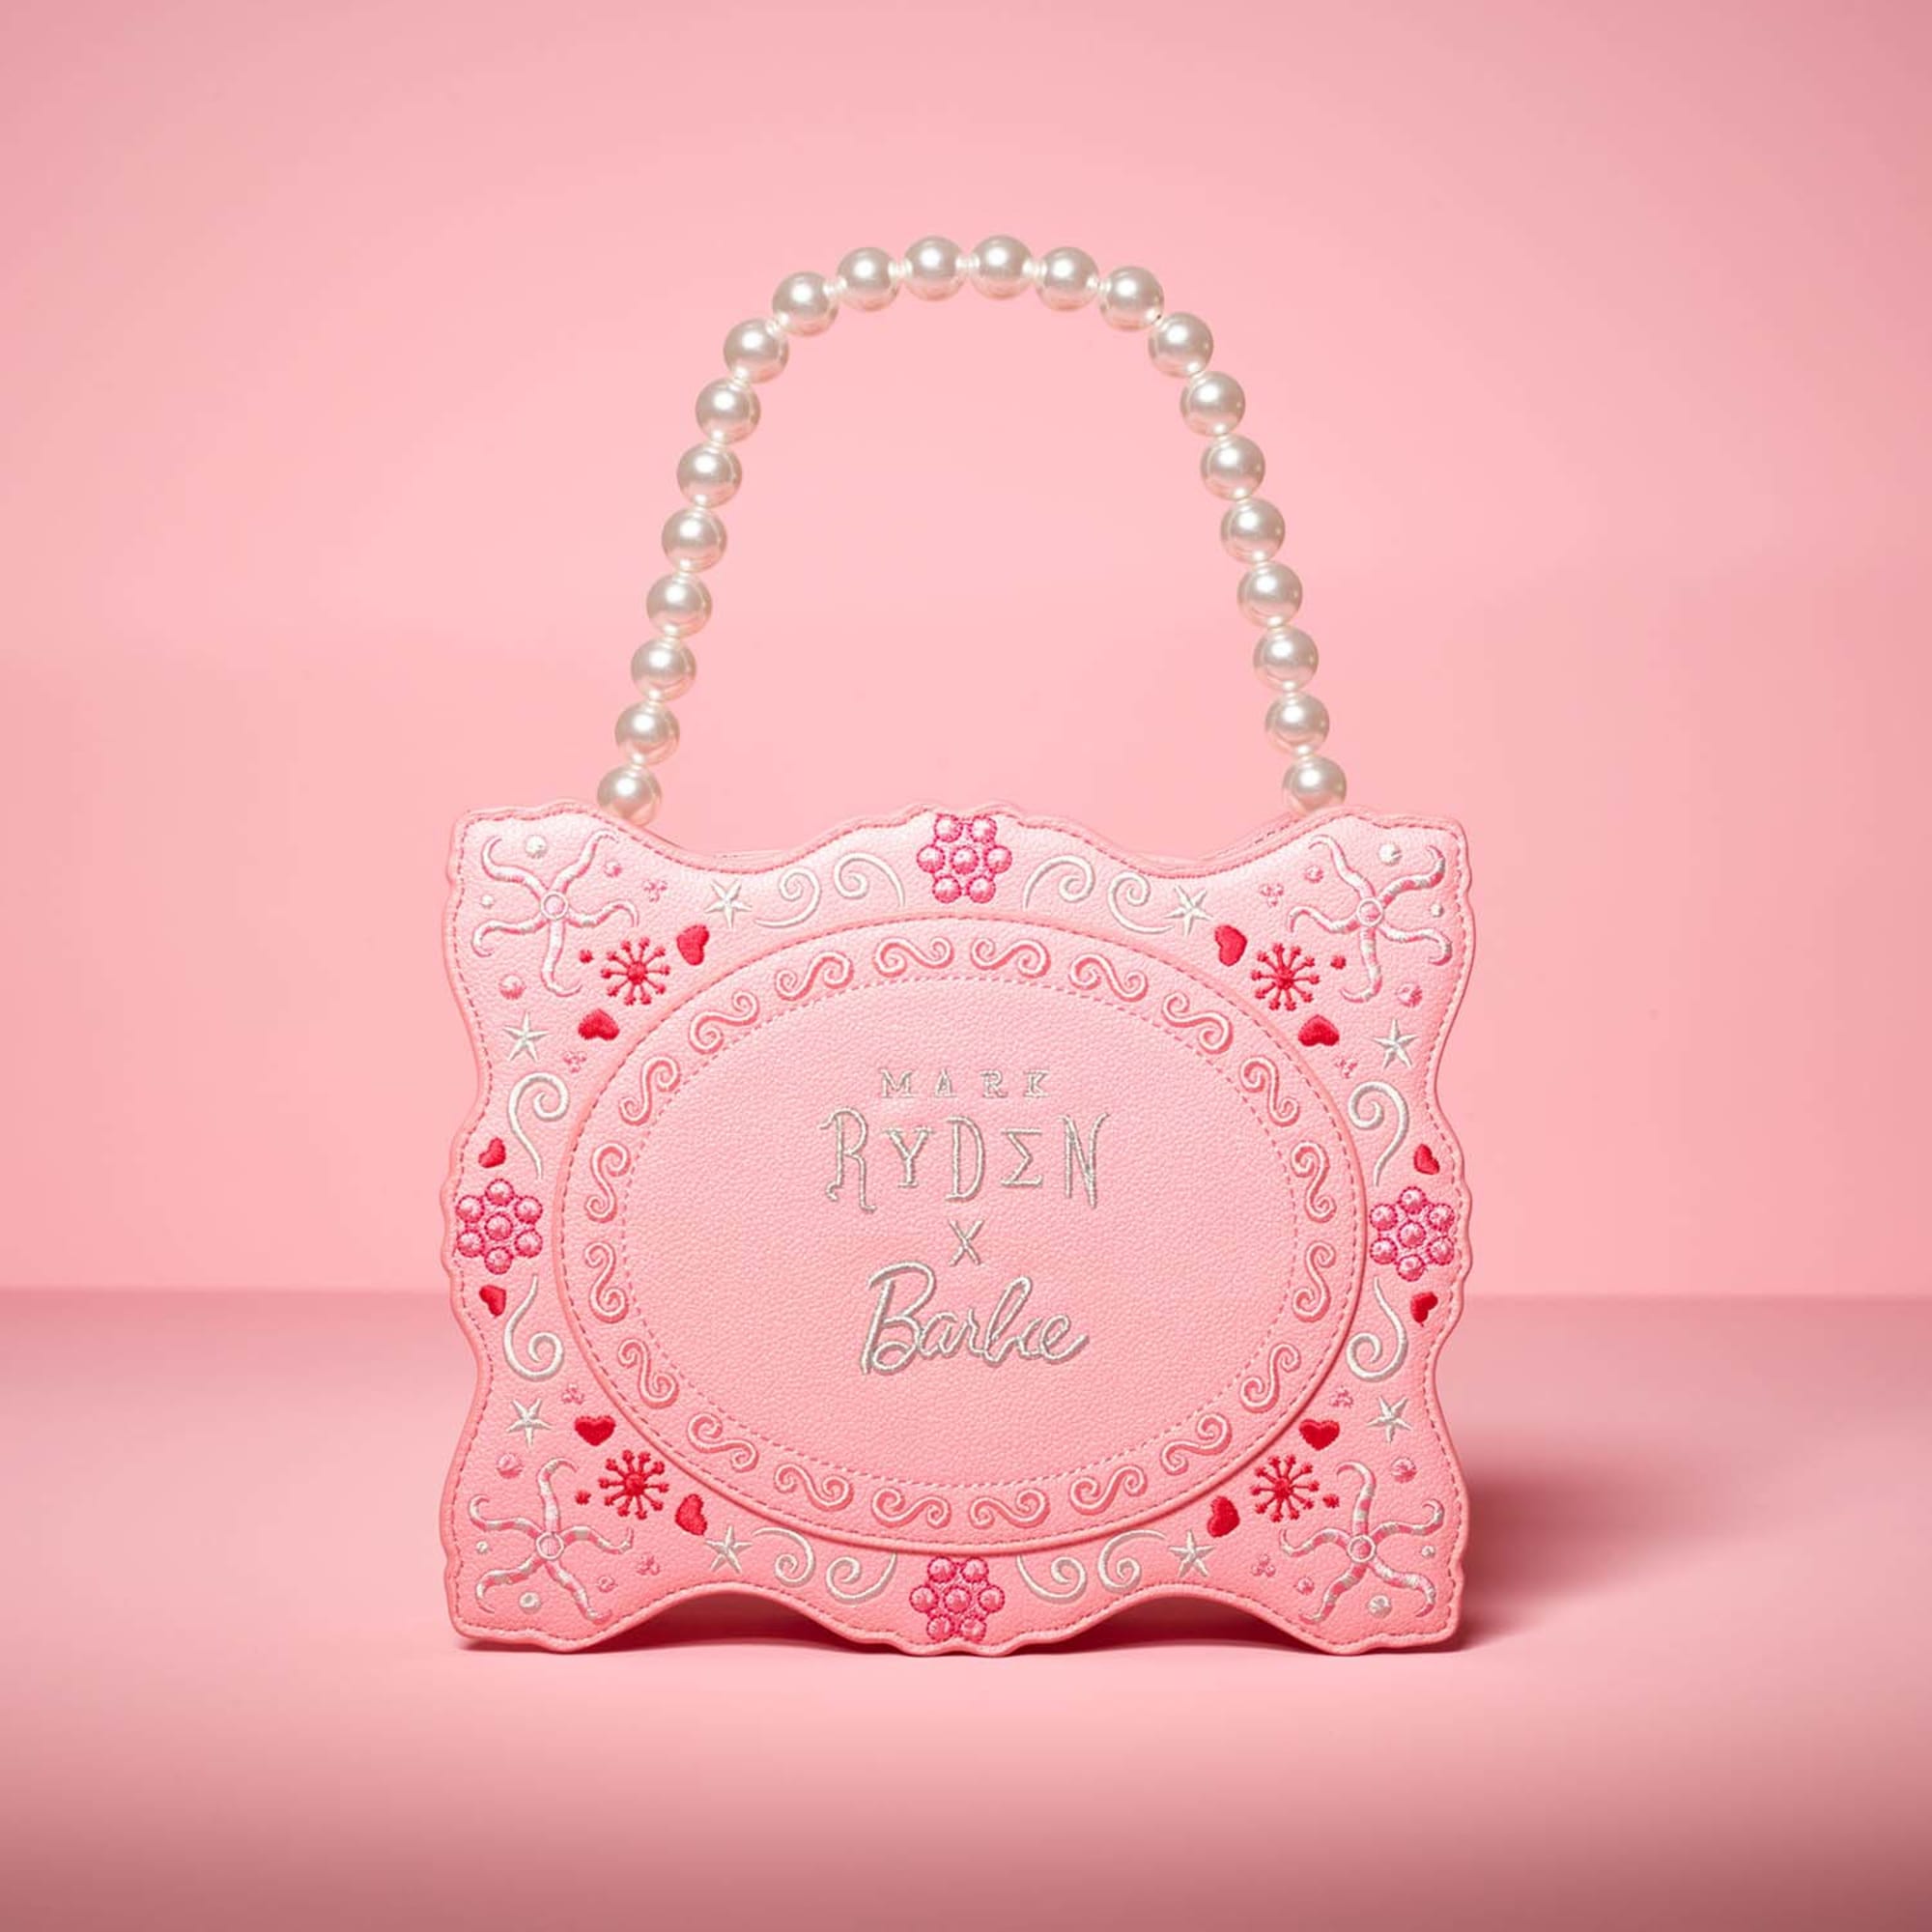 Barbie Fashion Fashionista Teal Handbag Purse Briefcase Doll Accessory -  Walmart.com